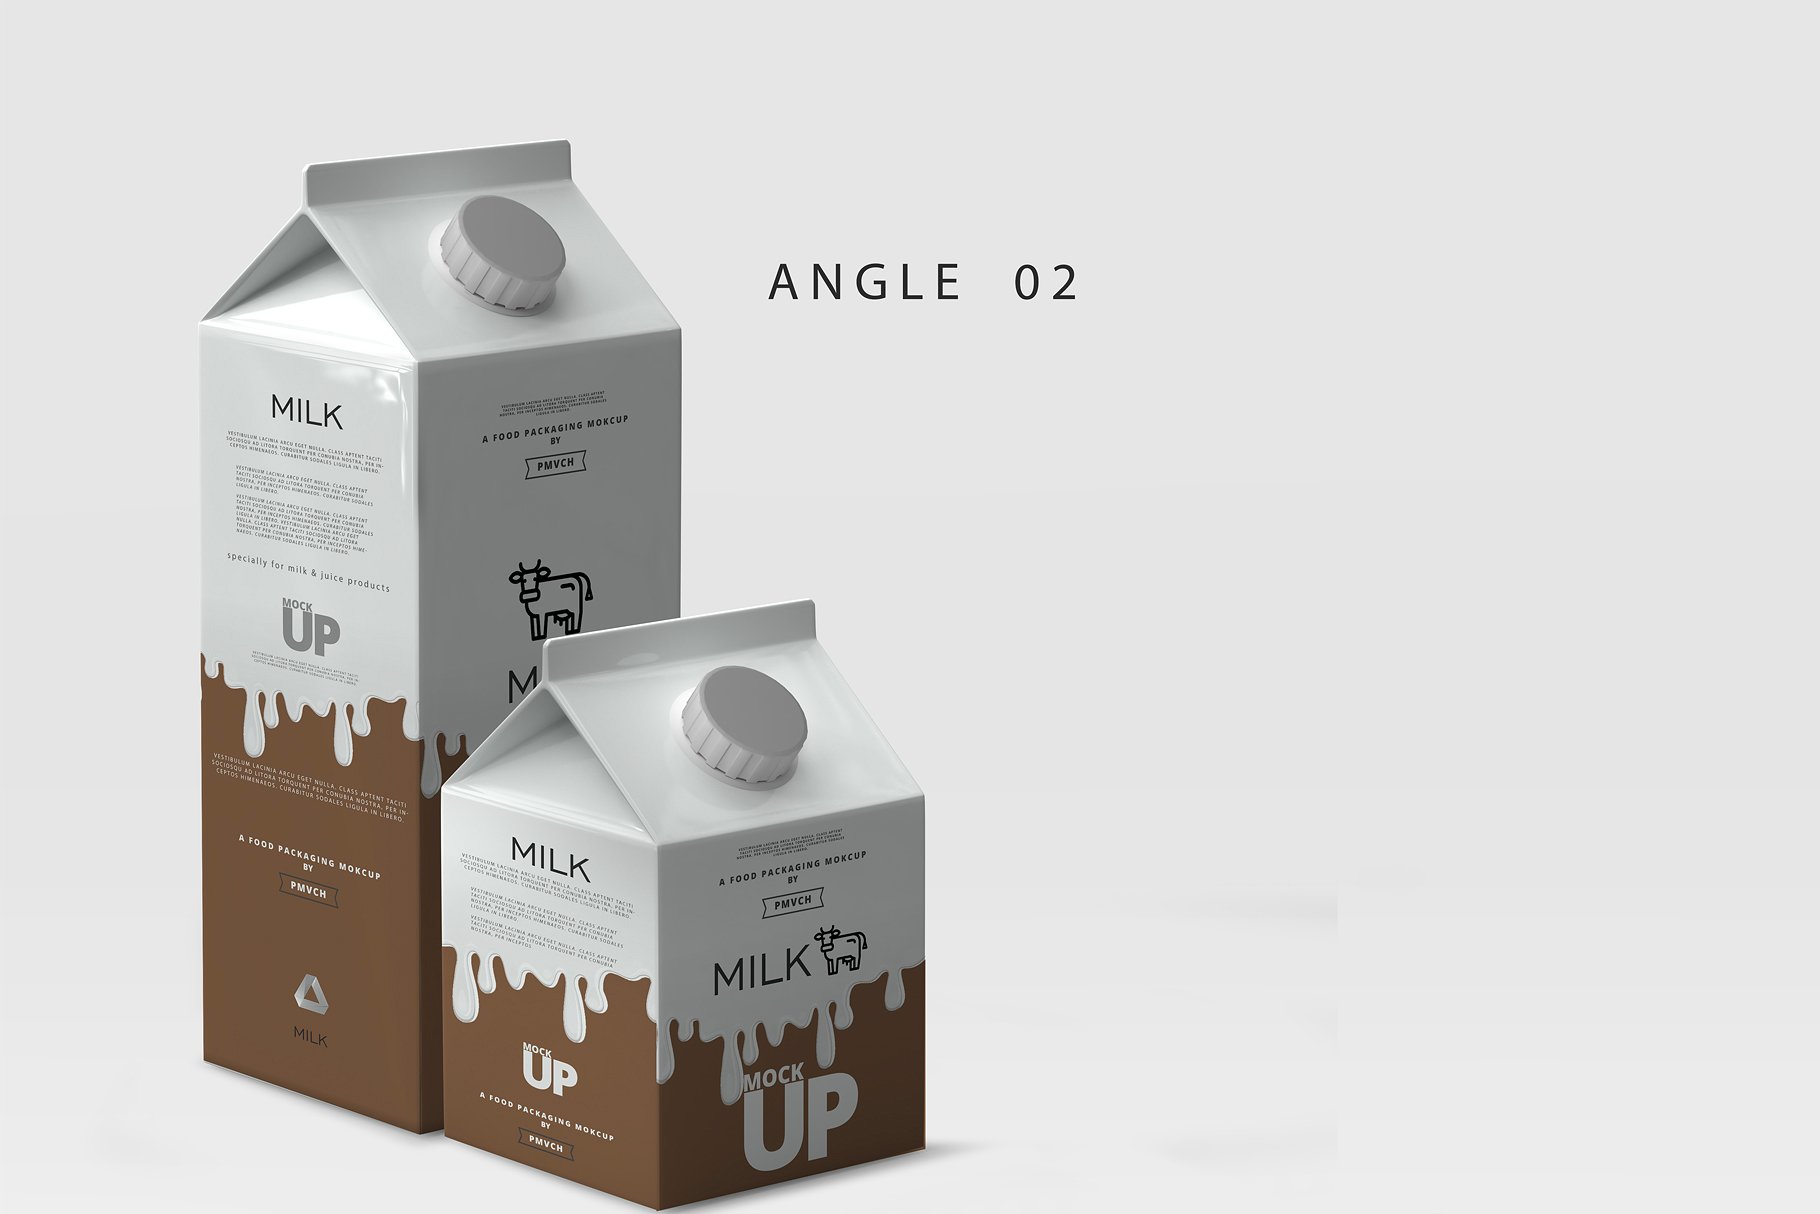 牛奶&果汁纸盒包装展示样机 Milk / Fruit Juice Carton Mockup [psd]插图(2)